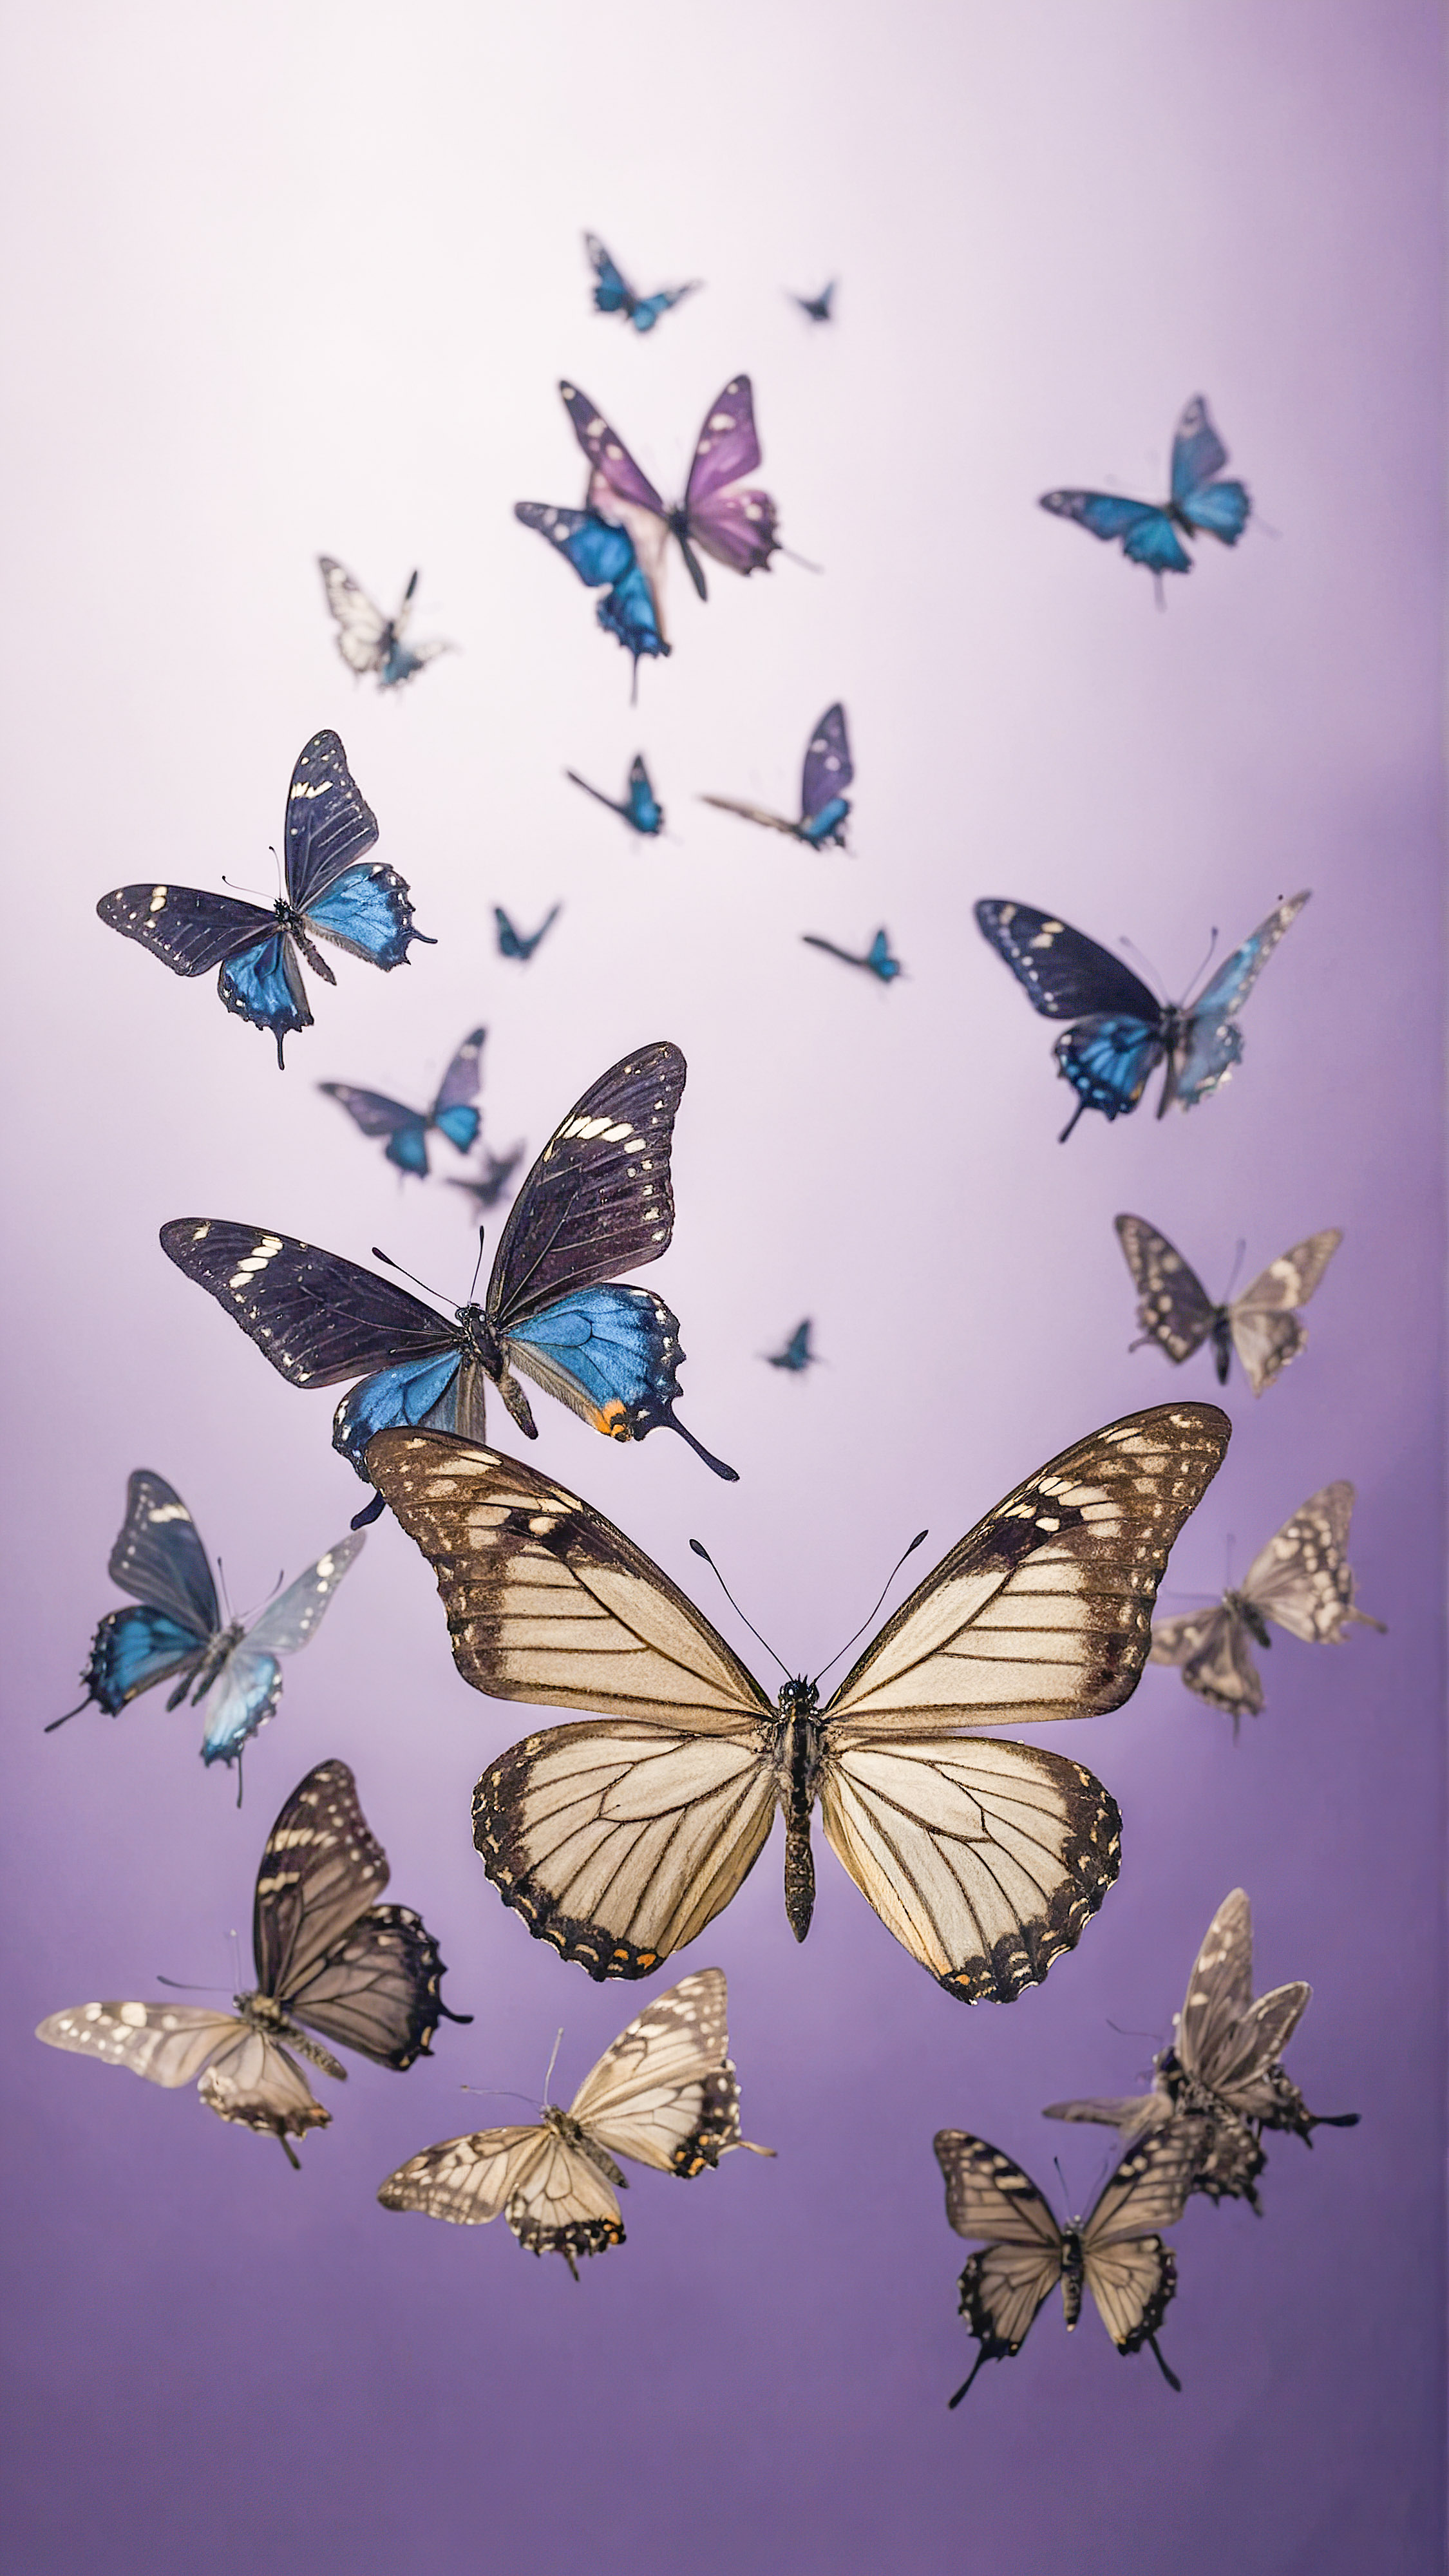 Vivez le calme apaisant avec nos fonds d'écran esthétiques mignons pour iPhone, présentant de petits papillons noirs volant contre un fond violet doux.